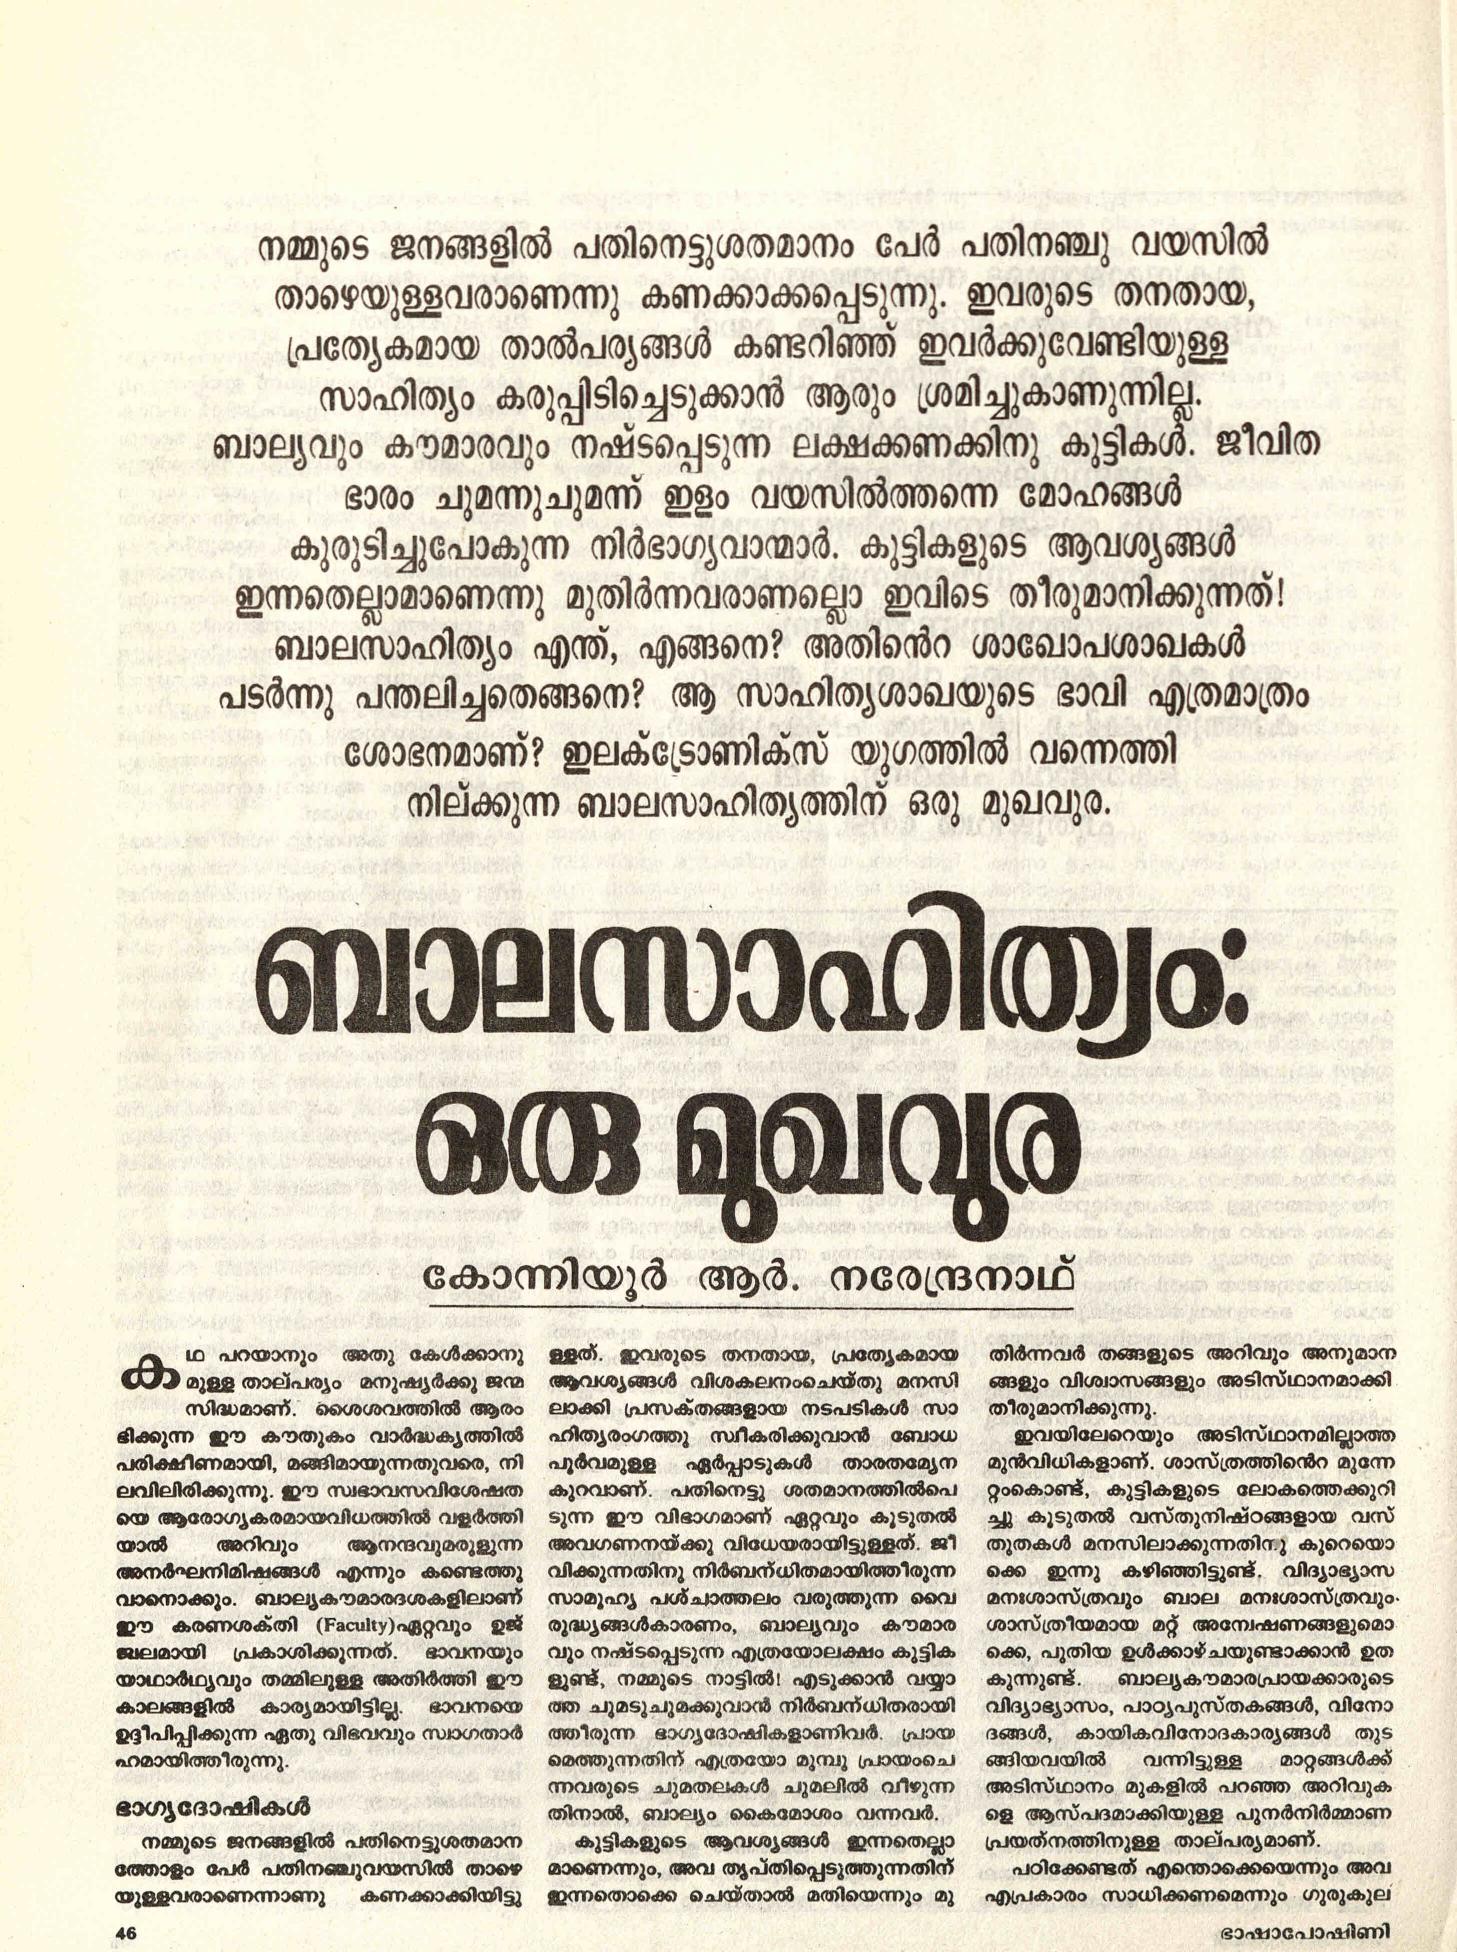  1989 -ബാലസാഹിത്യം: ഒരു മുഖവുര - കോന്നിയൂർ ആർ നരേന്ദ്രനാഥ്